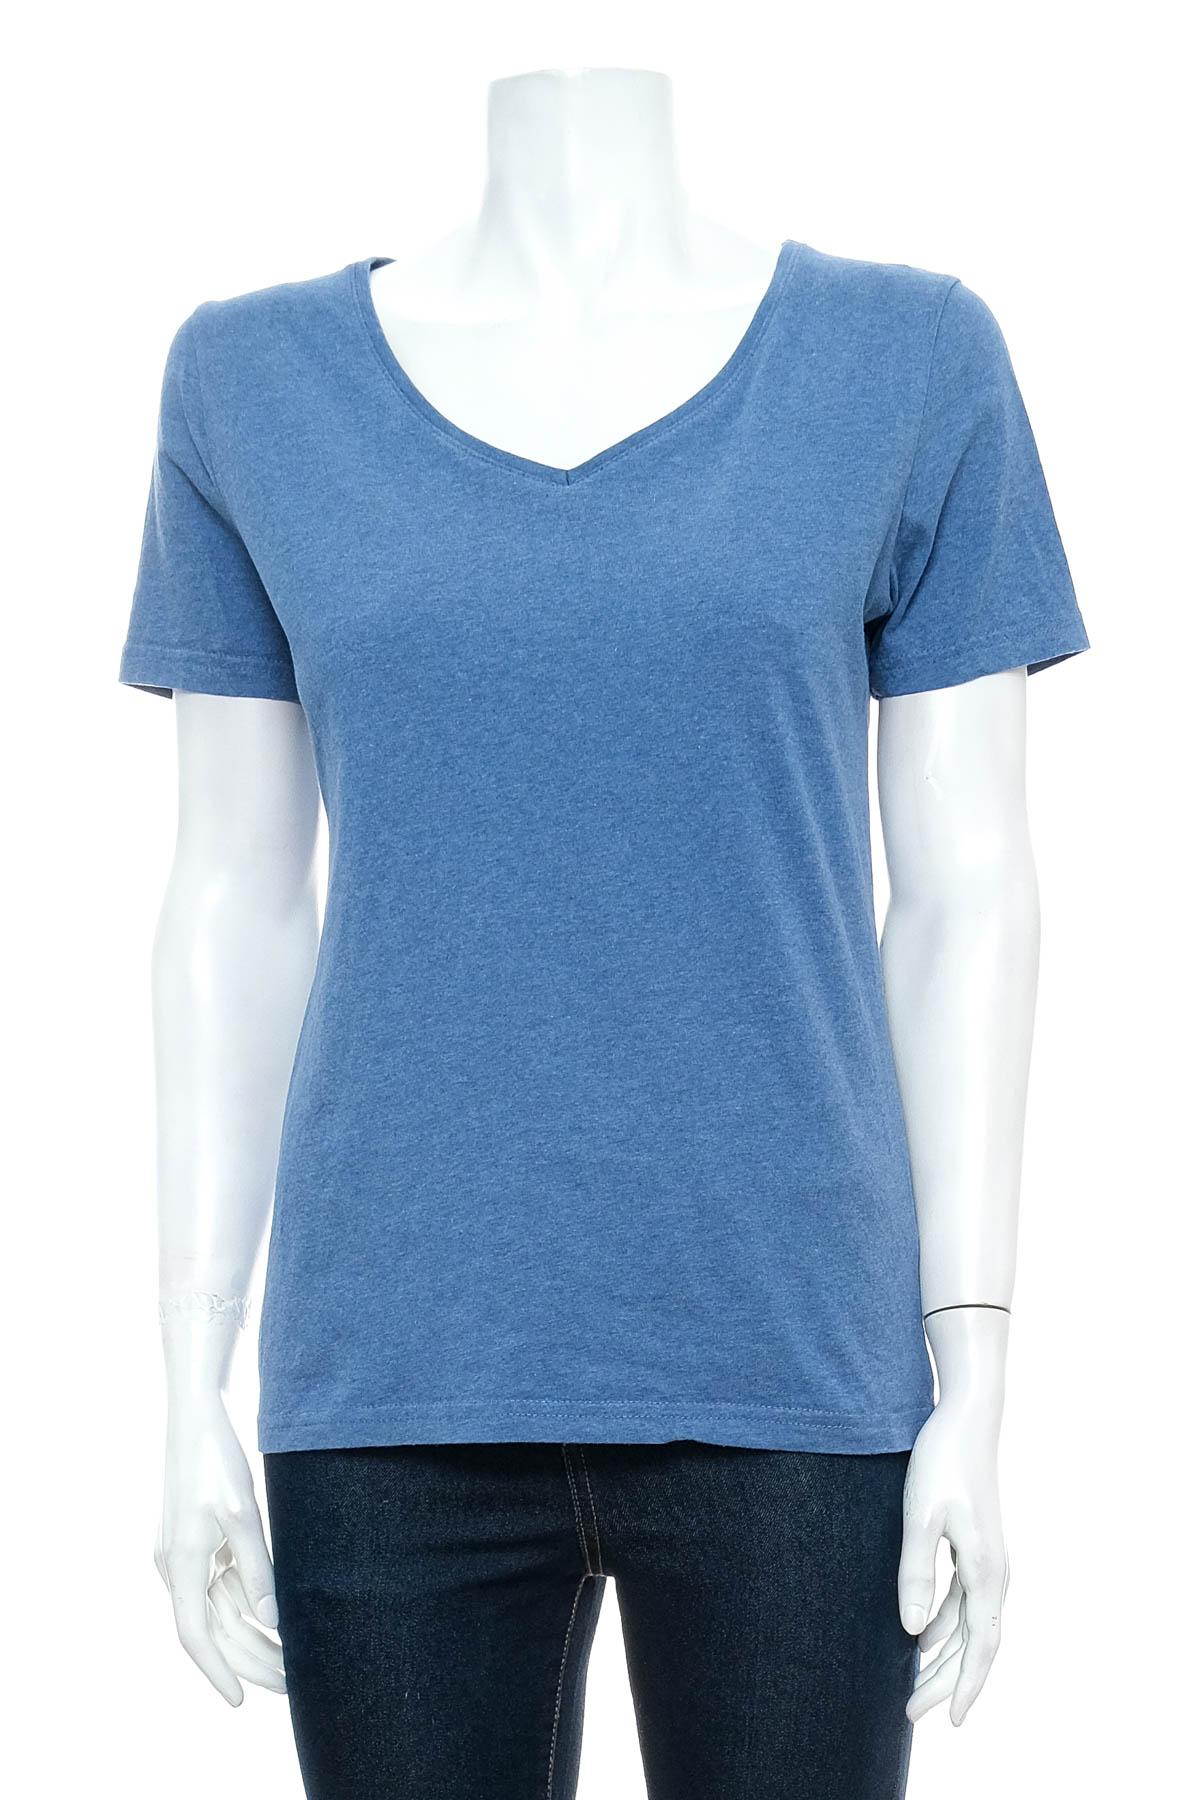 Women's t-shirt - Blue Motion - 0